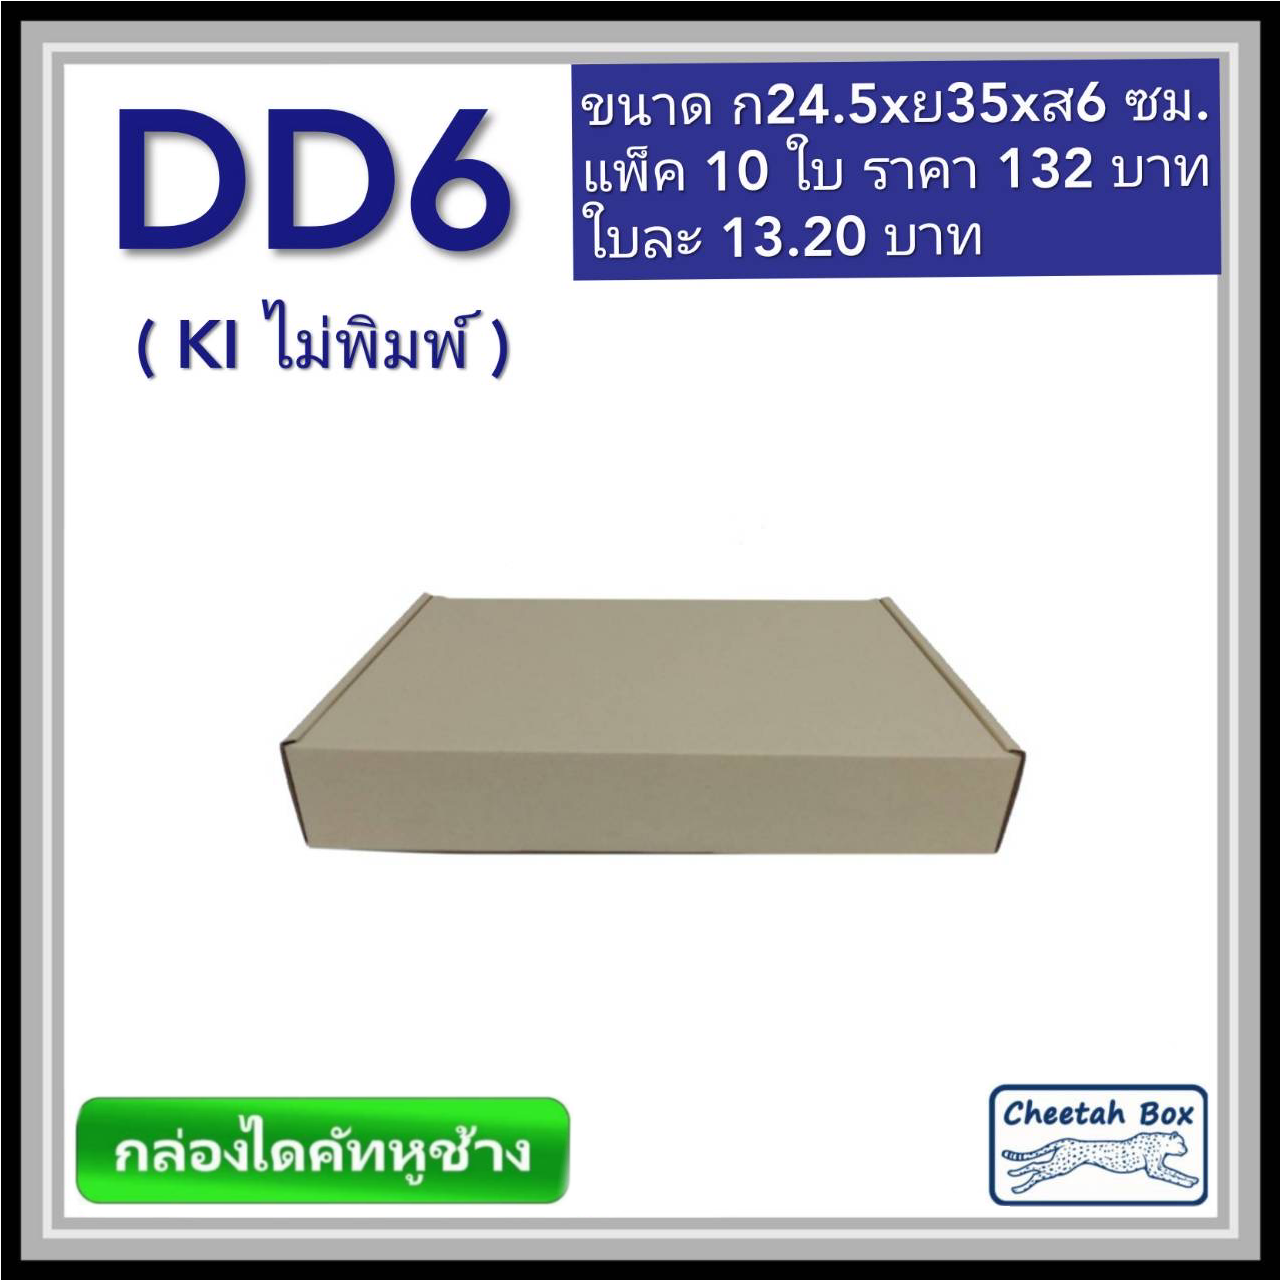 กล่องไดคัทหูช้างขนาด D สูง 6 cm. รหัส DD6 ไม่พิมพ์  (Die-cut Box) ขนาด 24.5W x 35L x 6H cm.